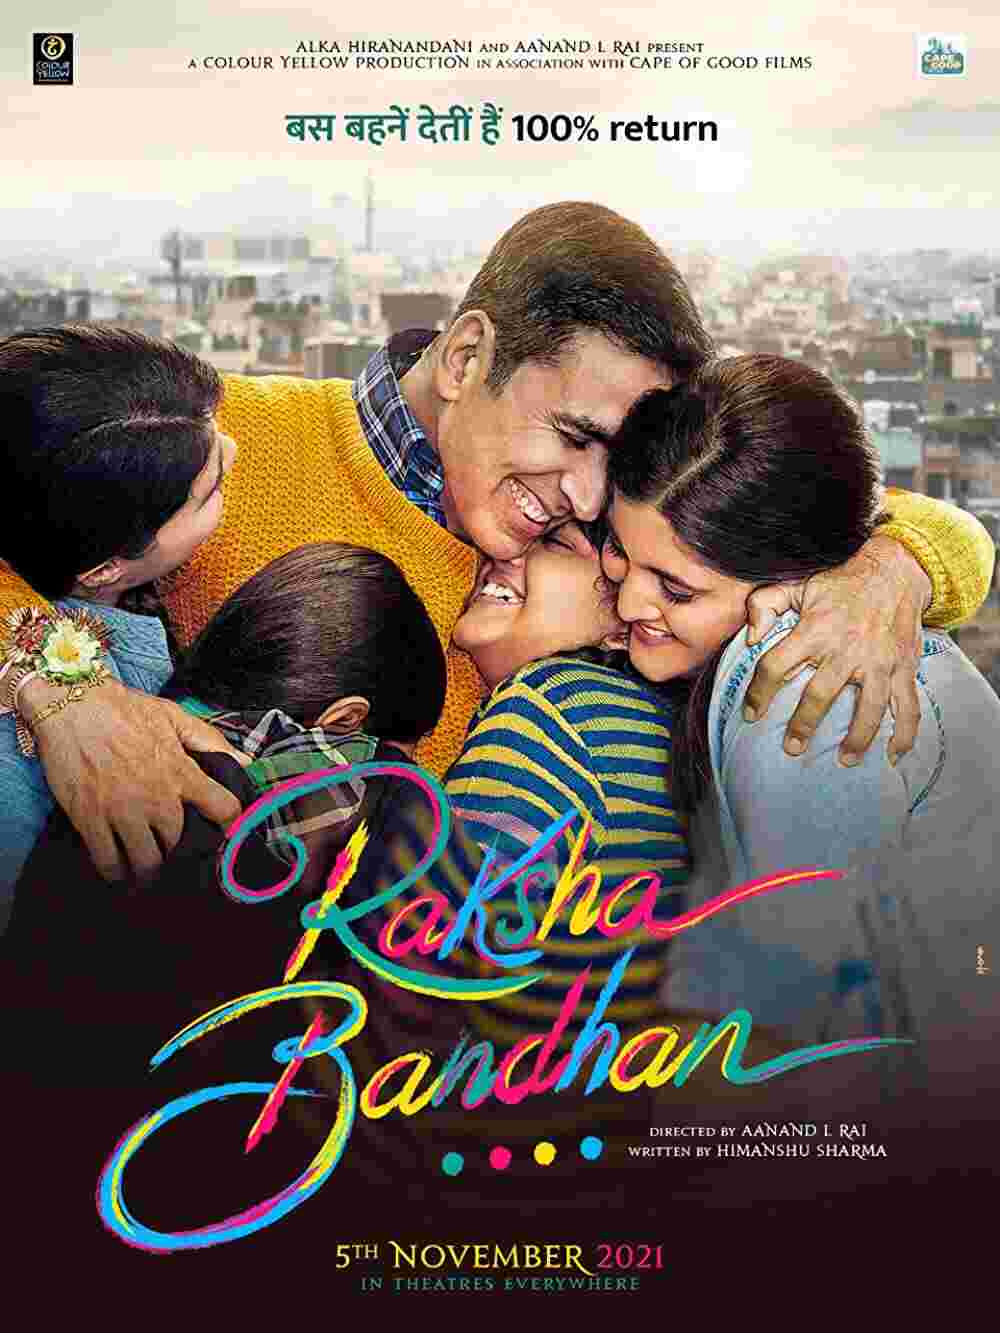 Akshay Kumar’s film Raksha Bandhan Trailer released,  the story is based on love and family